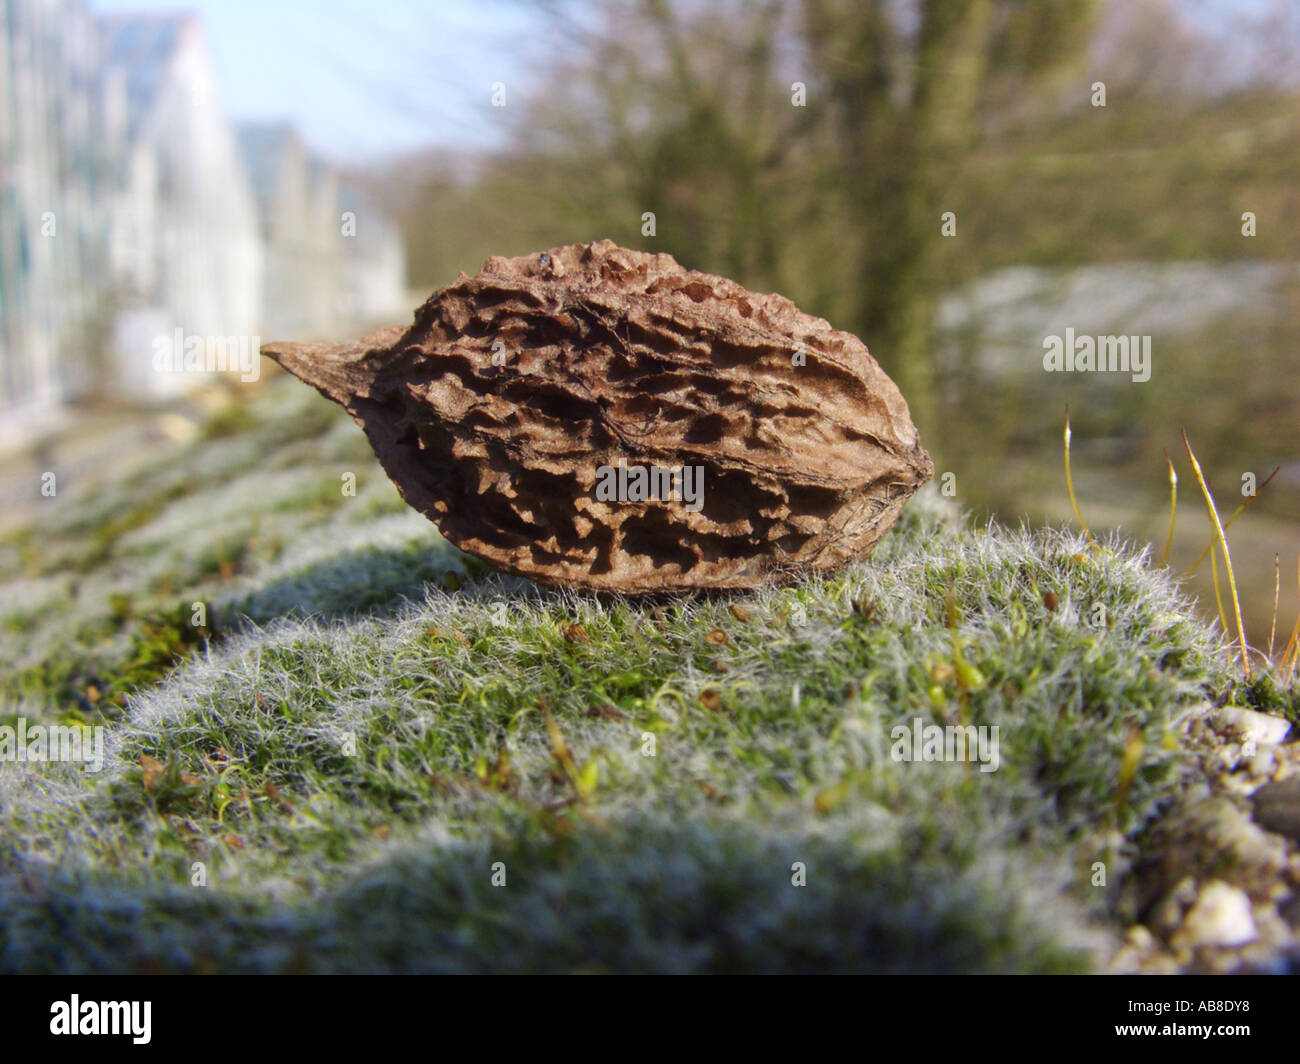 white walnut, butternut (Juglans cinerea), nut on moss Stock Photo